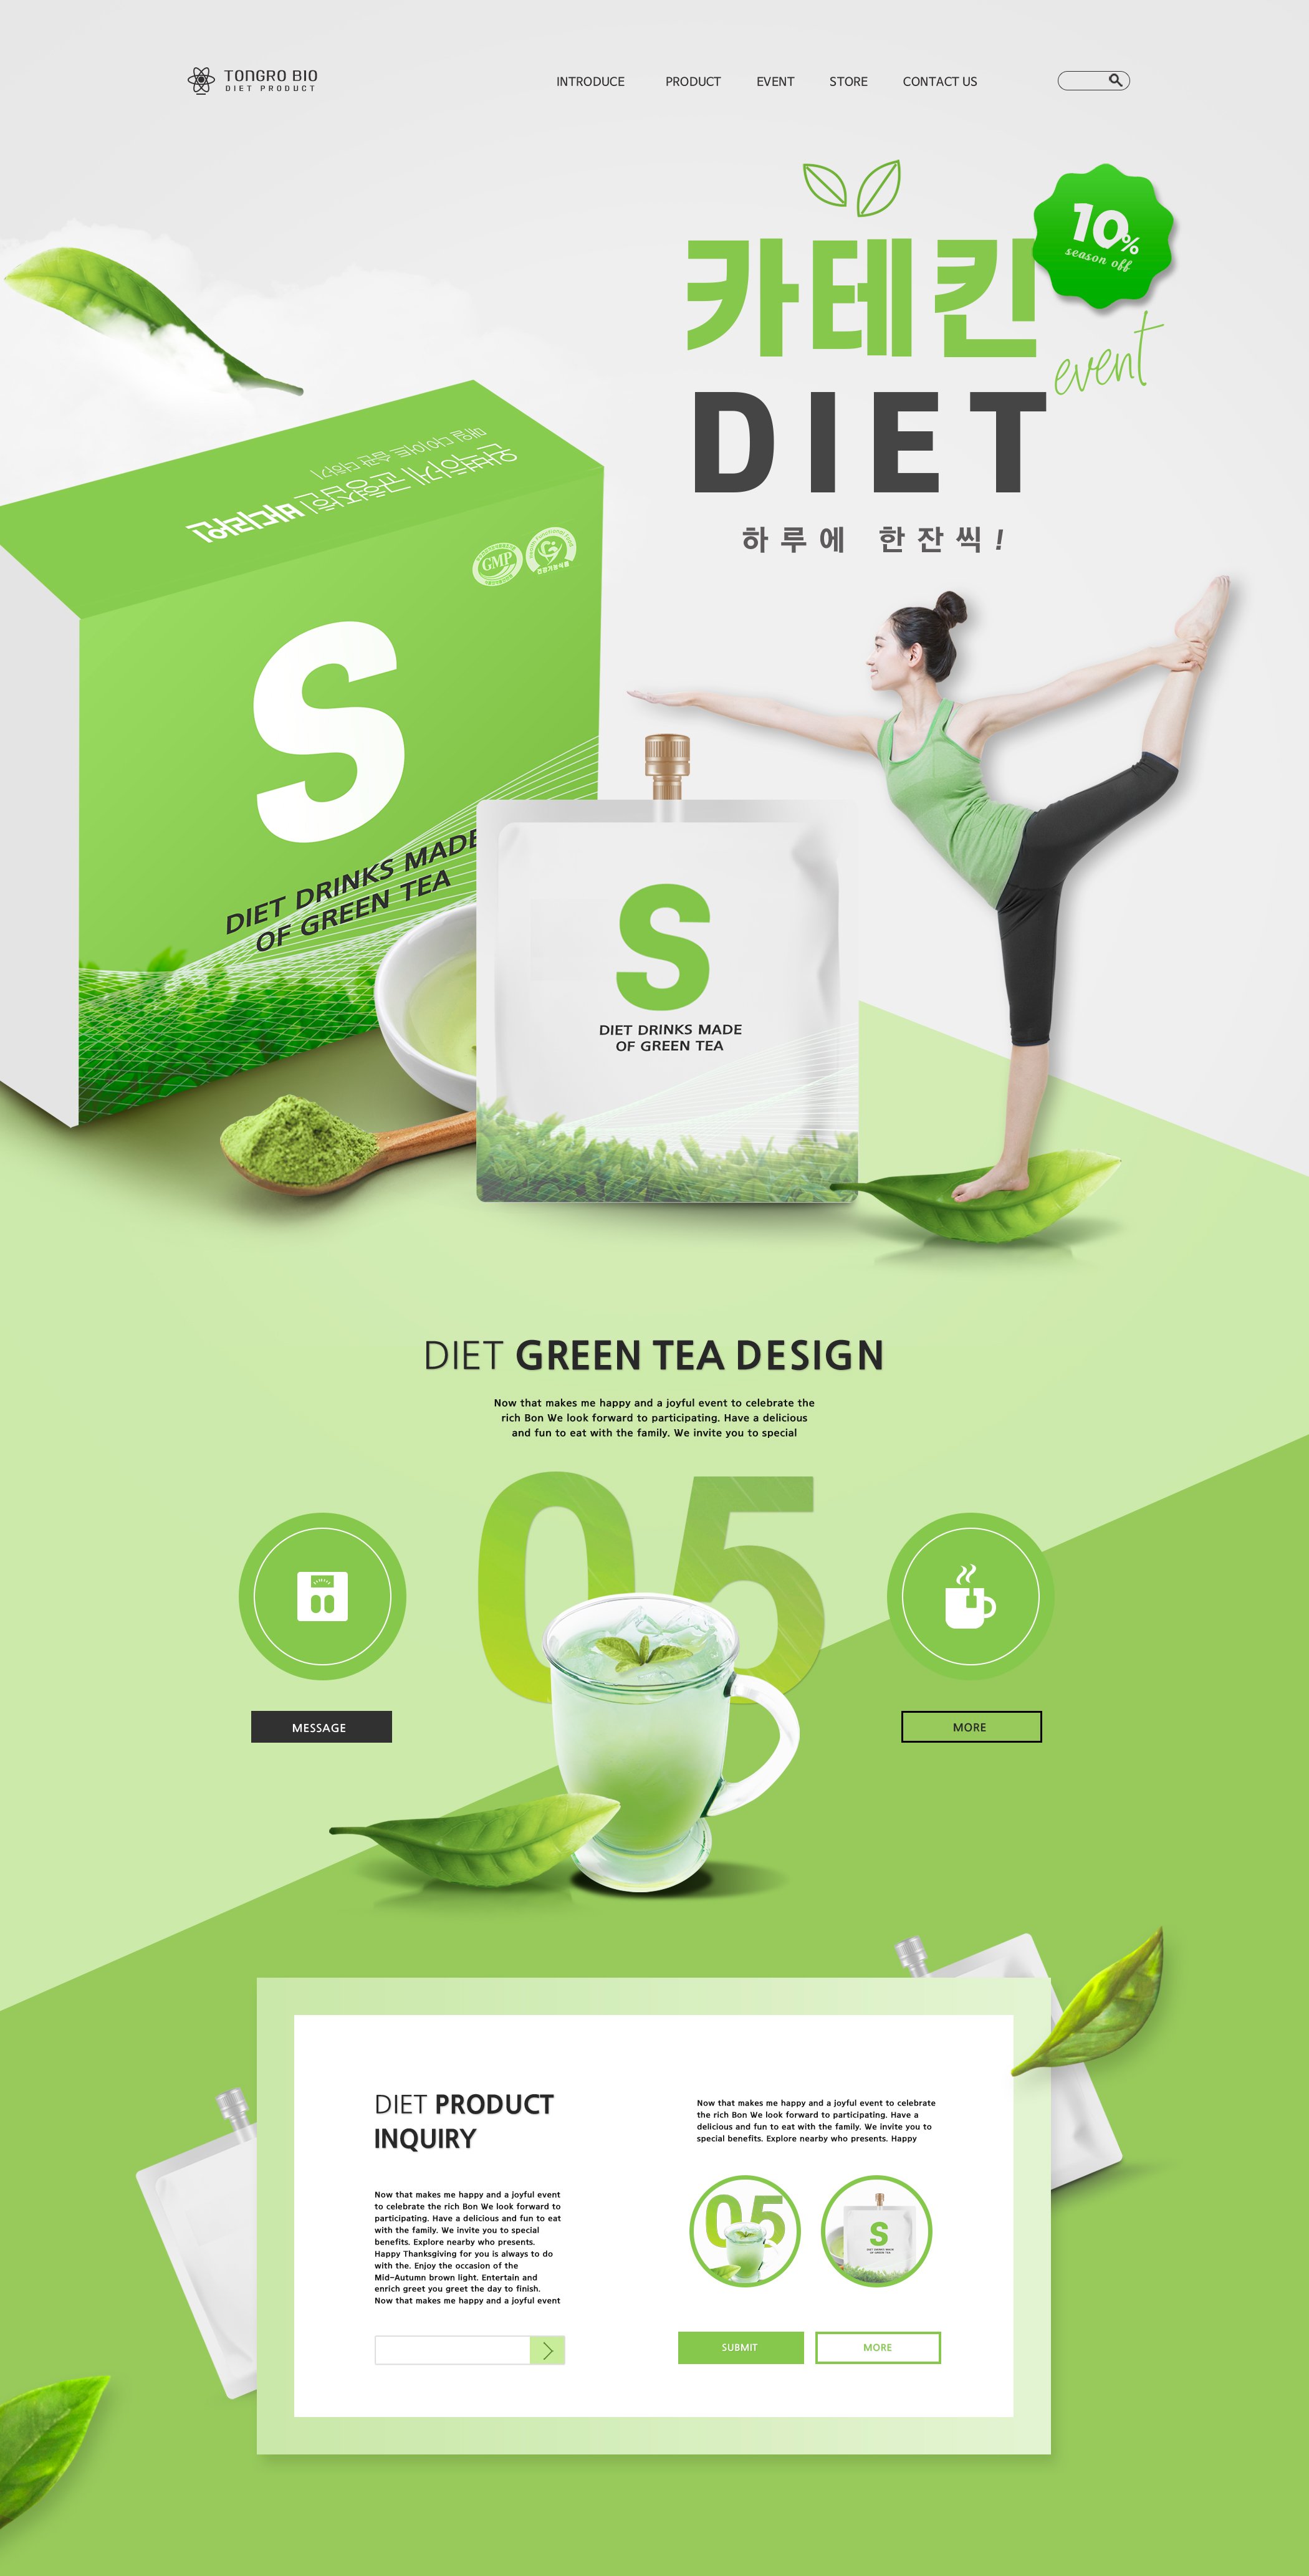 绿色健康减肥茶饮食促销促销网页设计模板